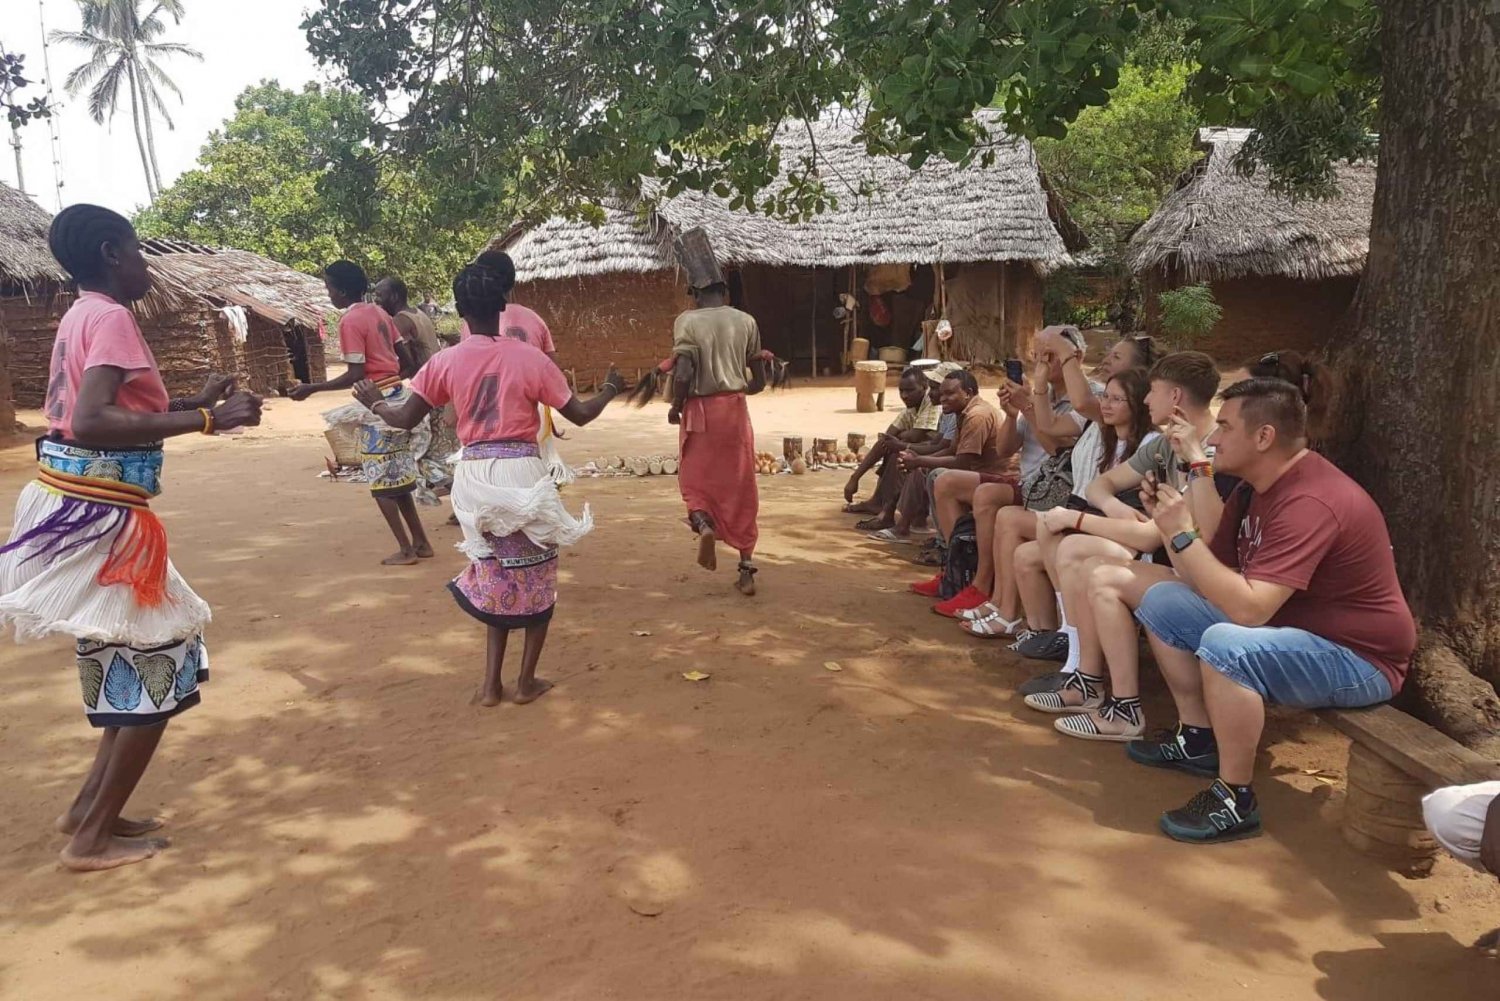 Diani: Giriama-kulttuuritanssiesitys ja paikallinen kyläkierros